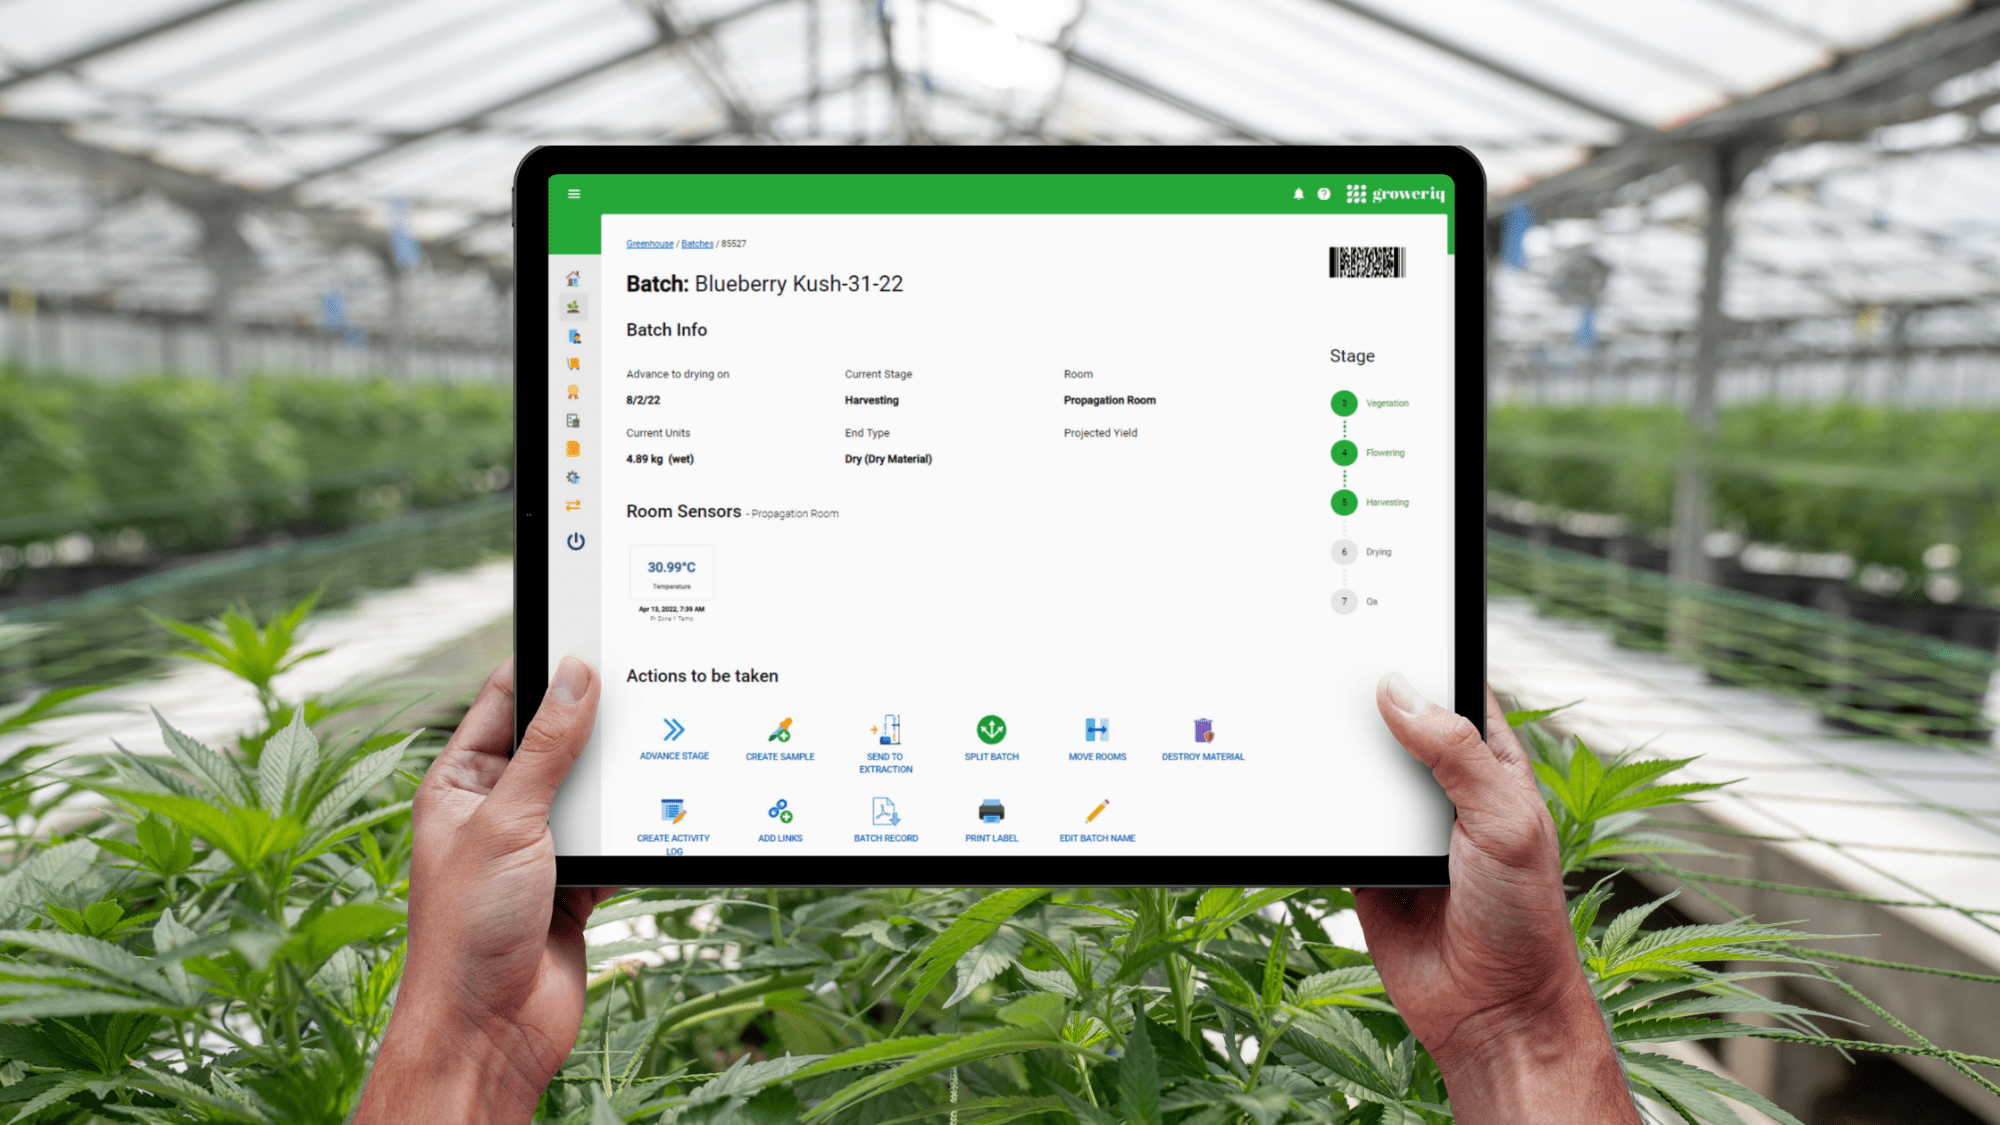 El software de fabricación de cannabis de GrowerIQ incluye una pantalla de resumen del registro del lote maestro que destaca toda la información relativa a su lote en un solo lugar.